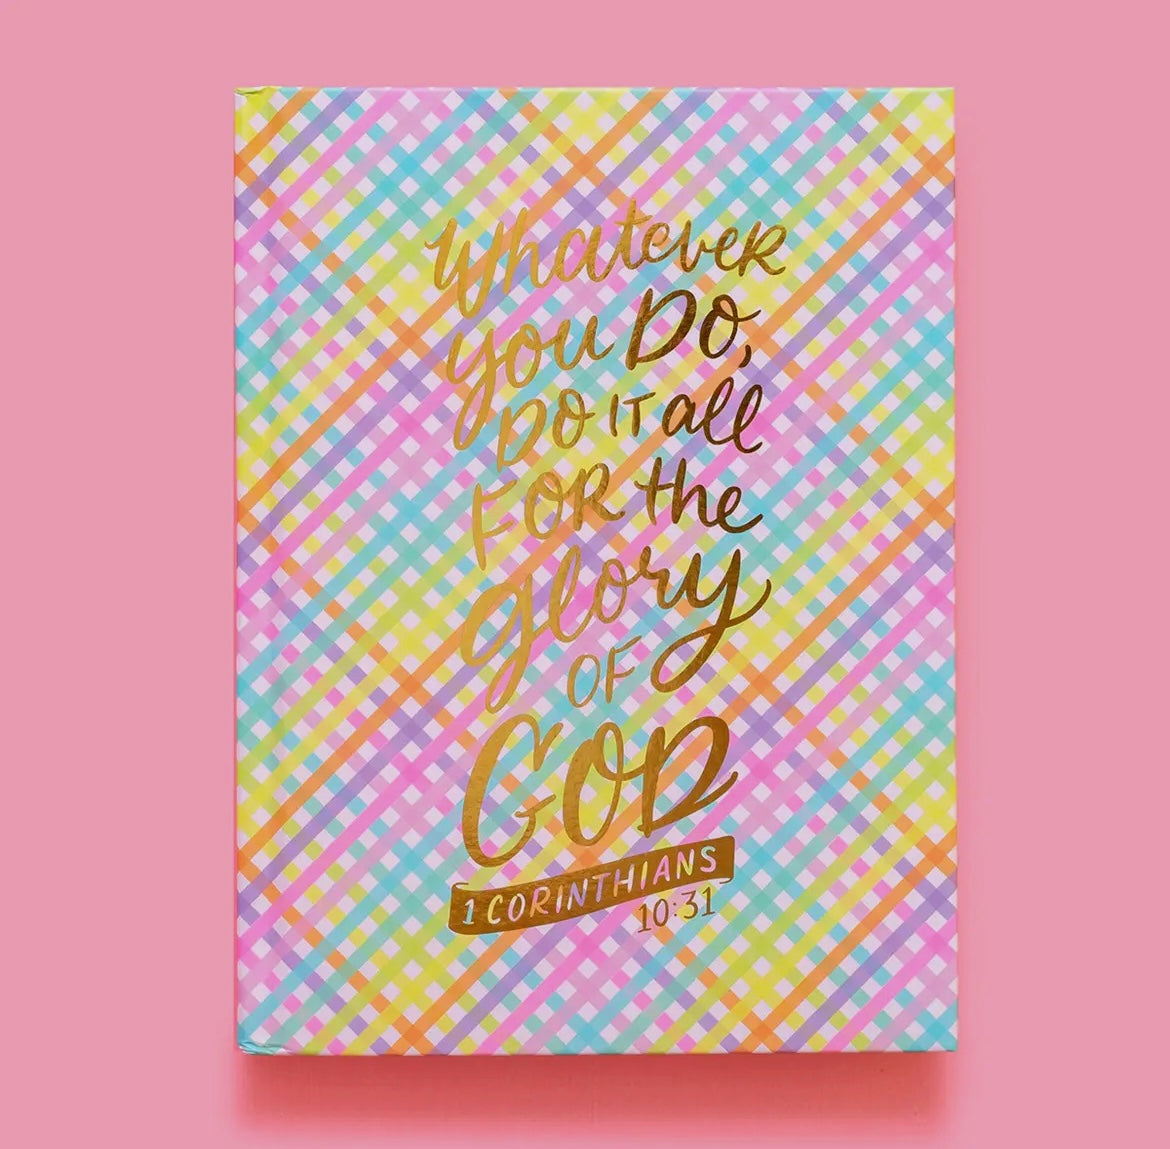 1 Corinthians 10:31 Notebook